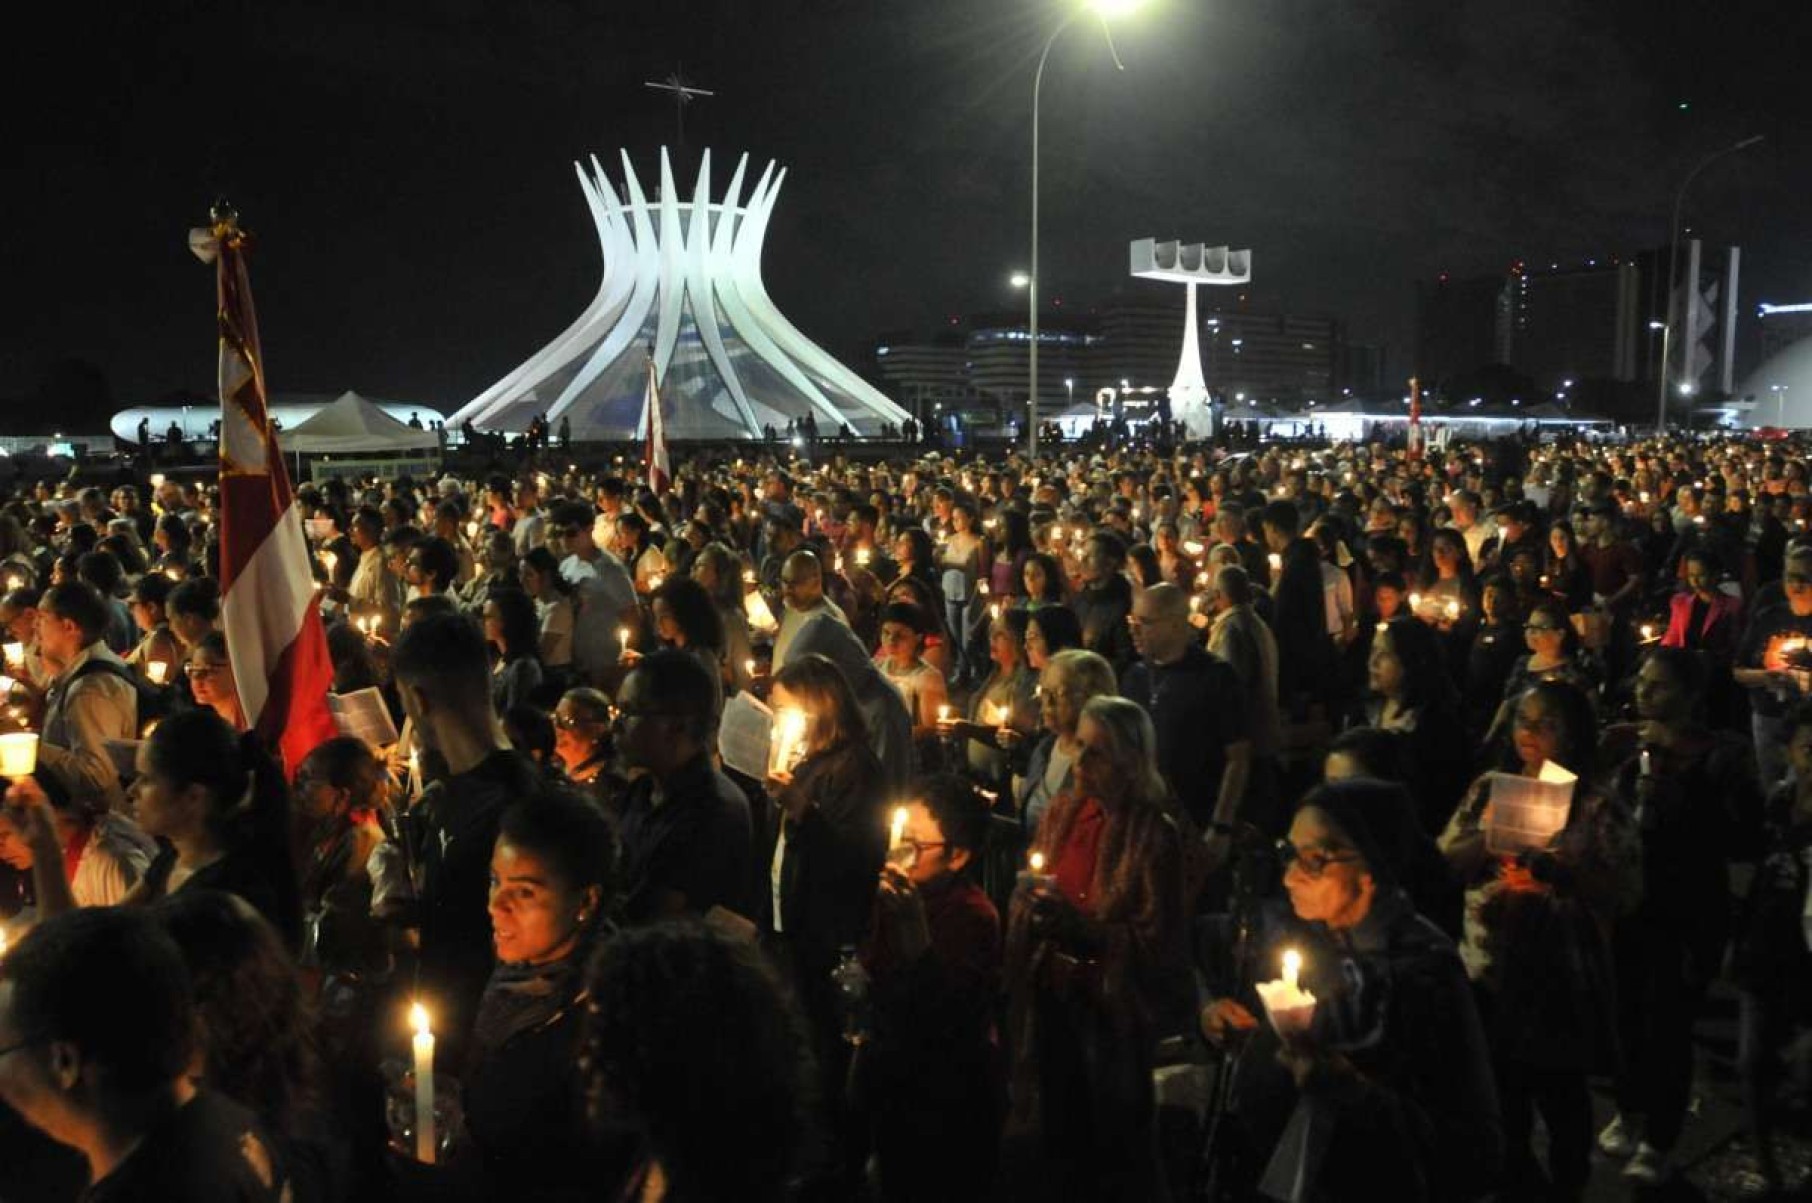 Liturgia de fé e solidariedade marcam a celebração do Corpus Christi